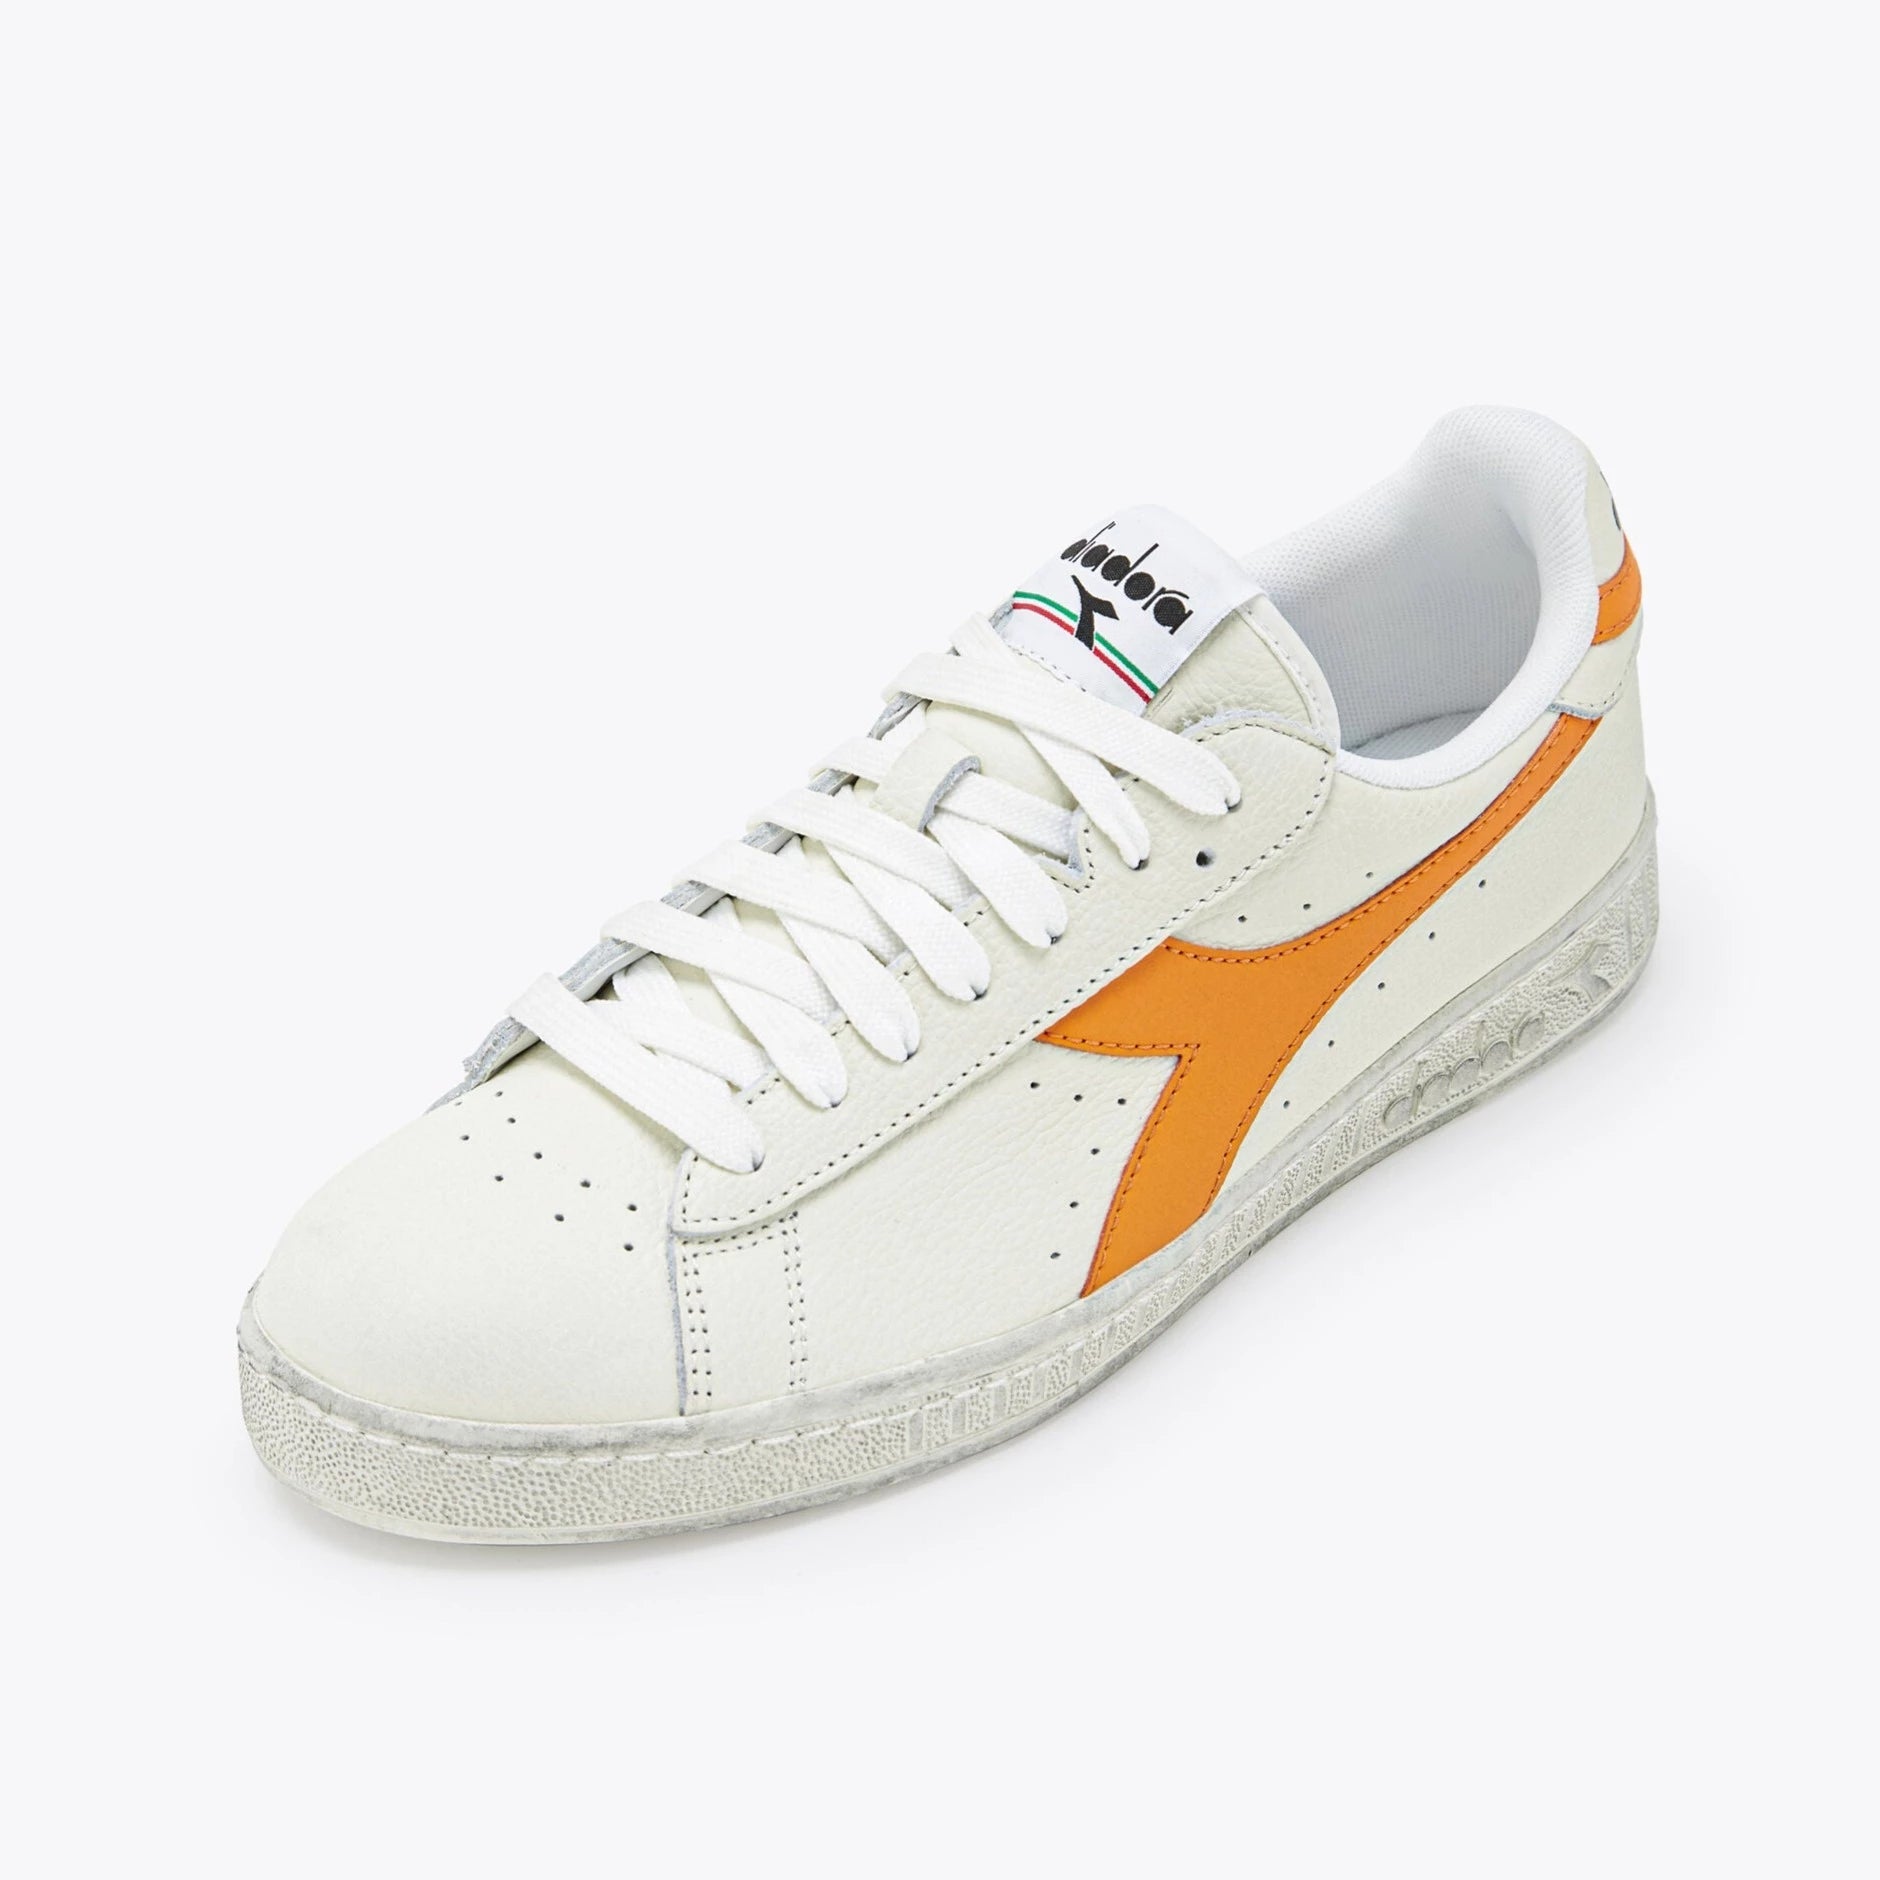 Sneakers De La Marca Diadora Para Unisex Modelo Game L Low Fluo Wax En Color Naranja